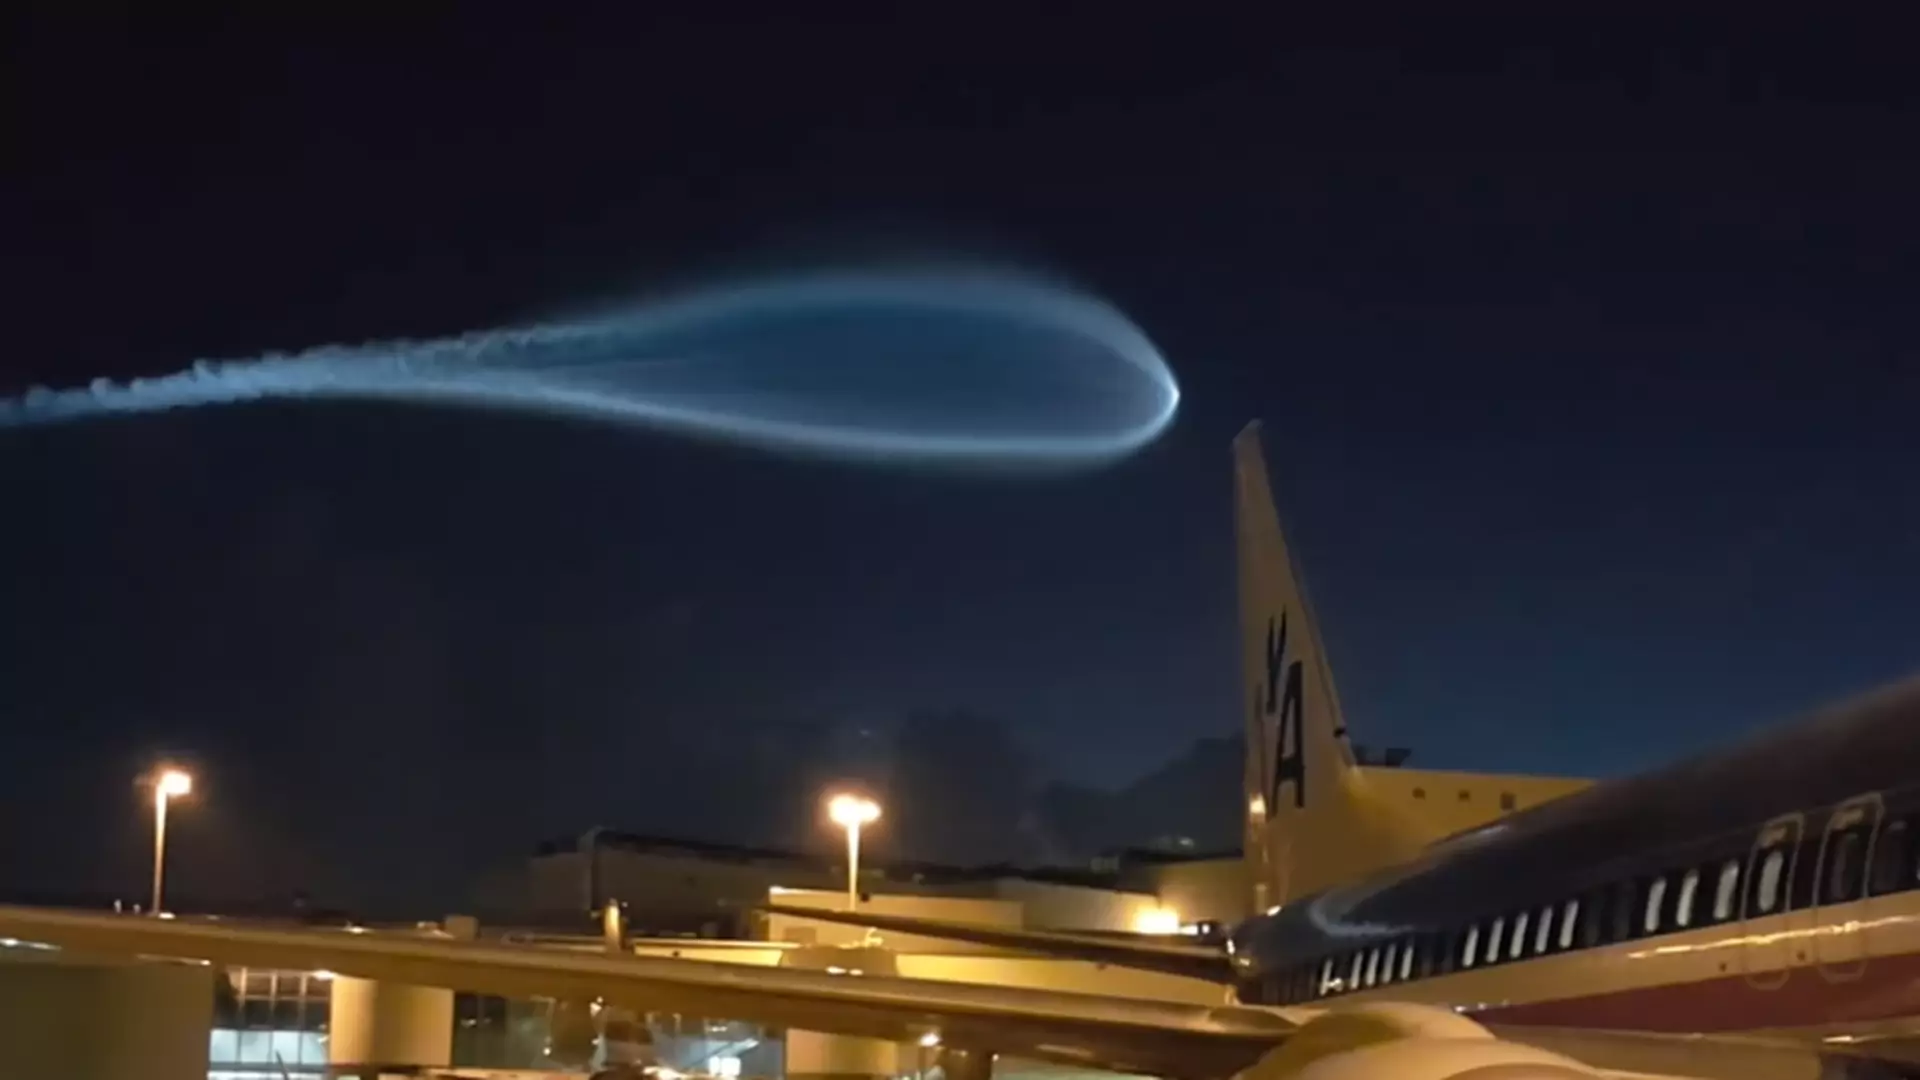 Niesamowity obiekt na niebie nad Miami. Ludzie przecierali oczy ze zdumienia